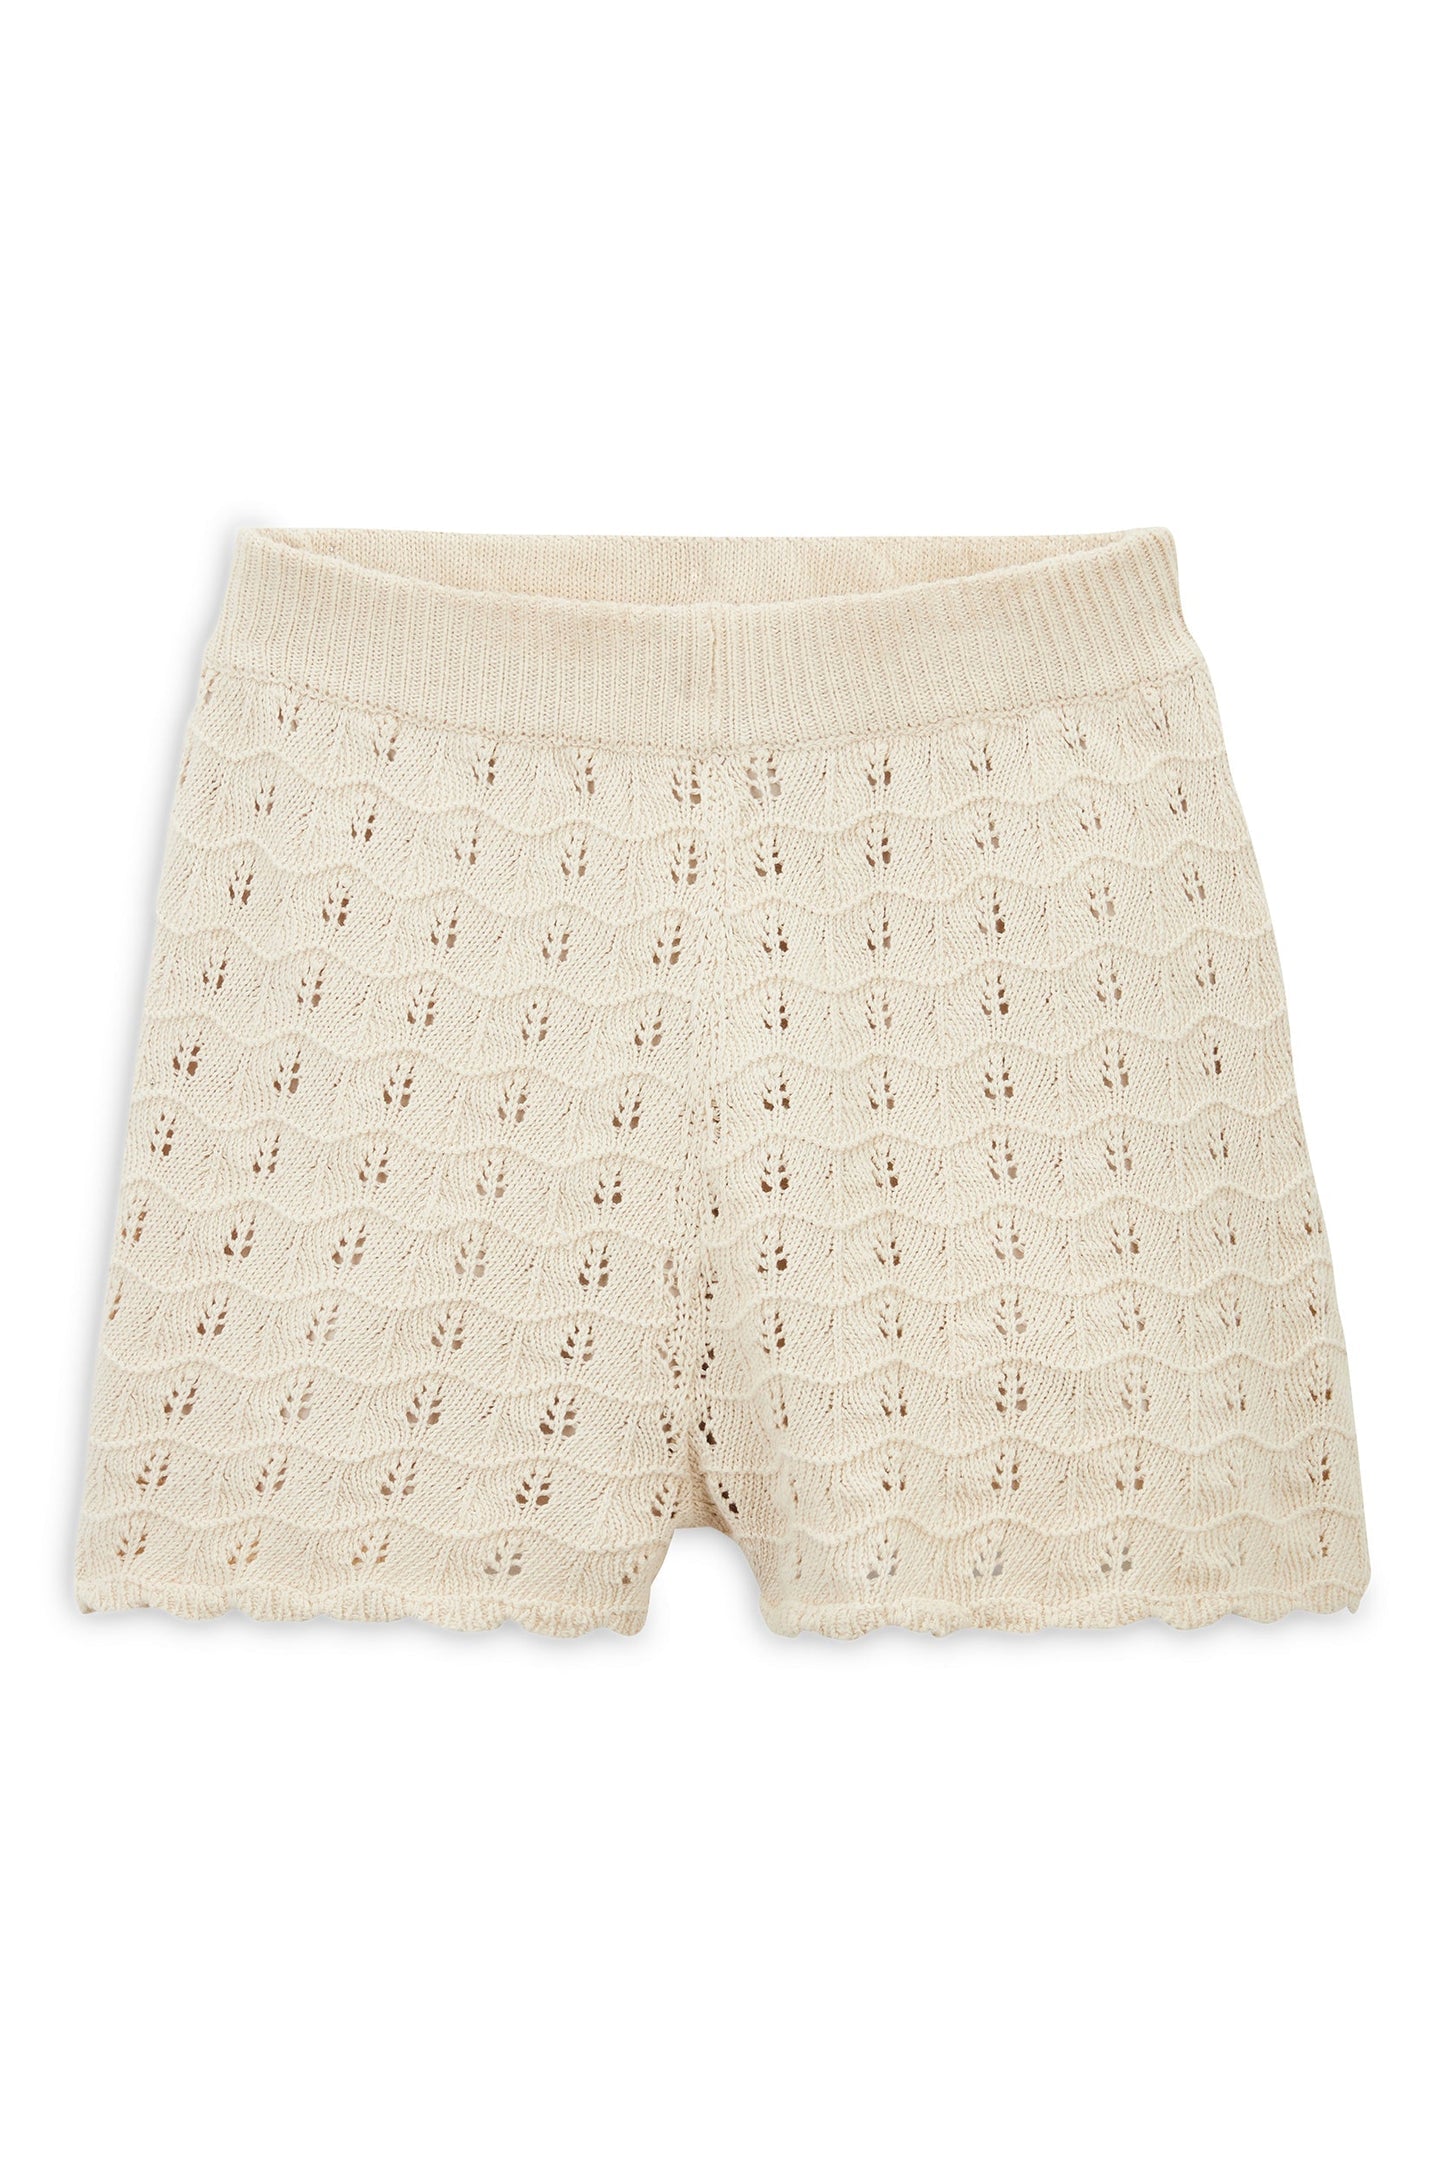 Amande cream white shorts